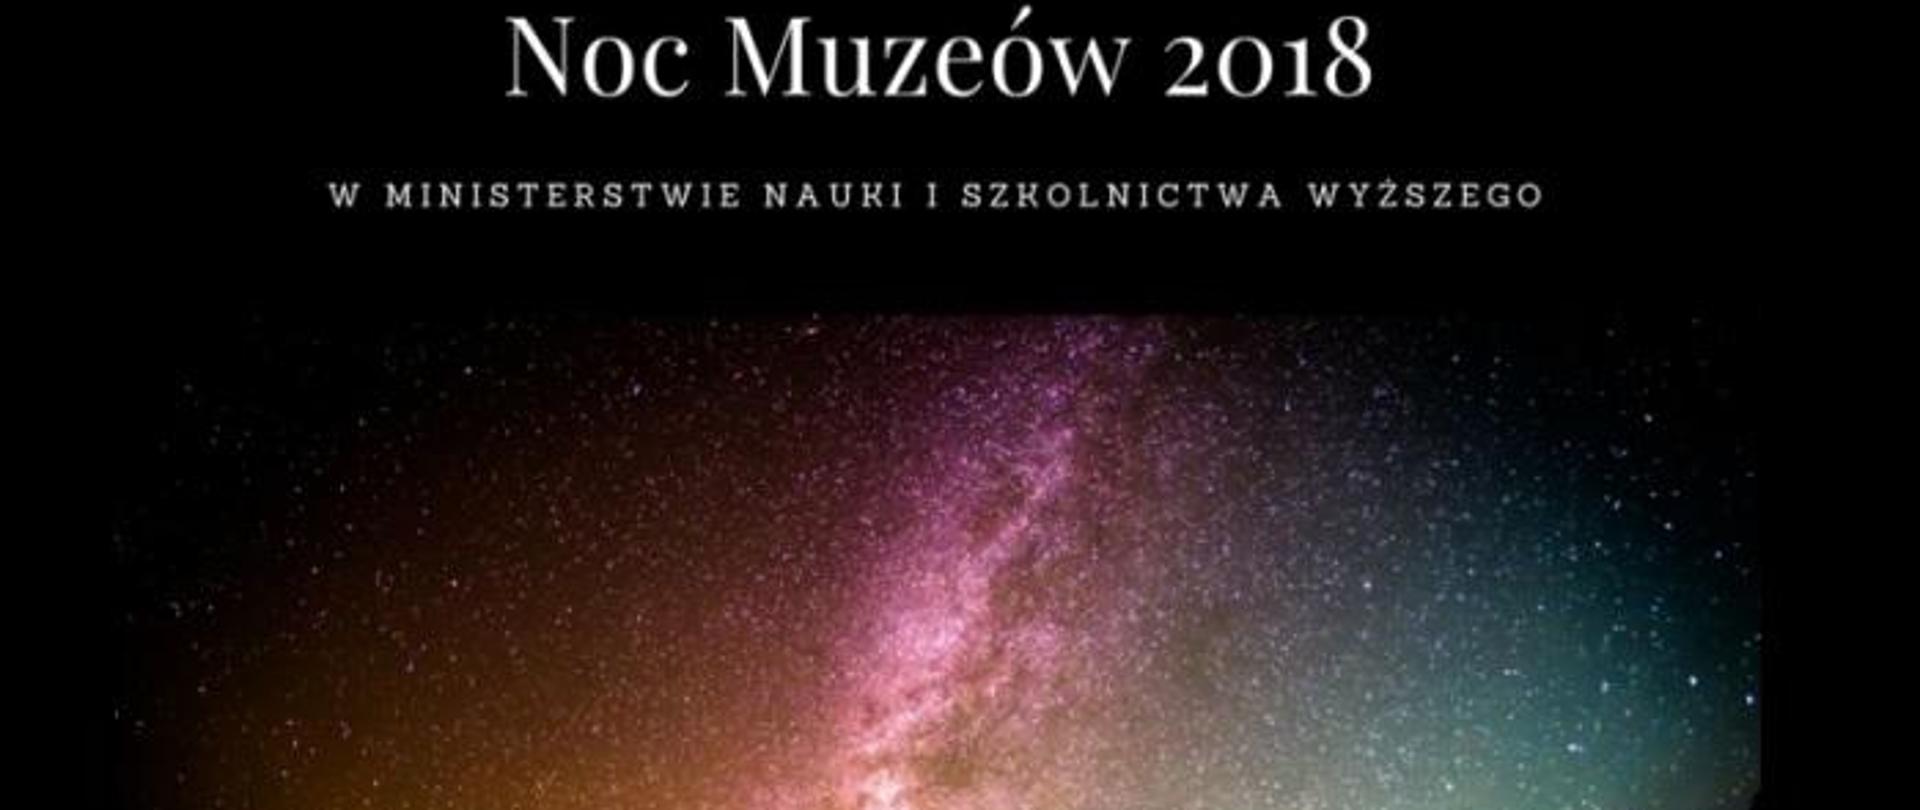 Grafika - rozgwieżdżone niebo i napis Noc Muzeów 2018